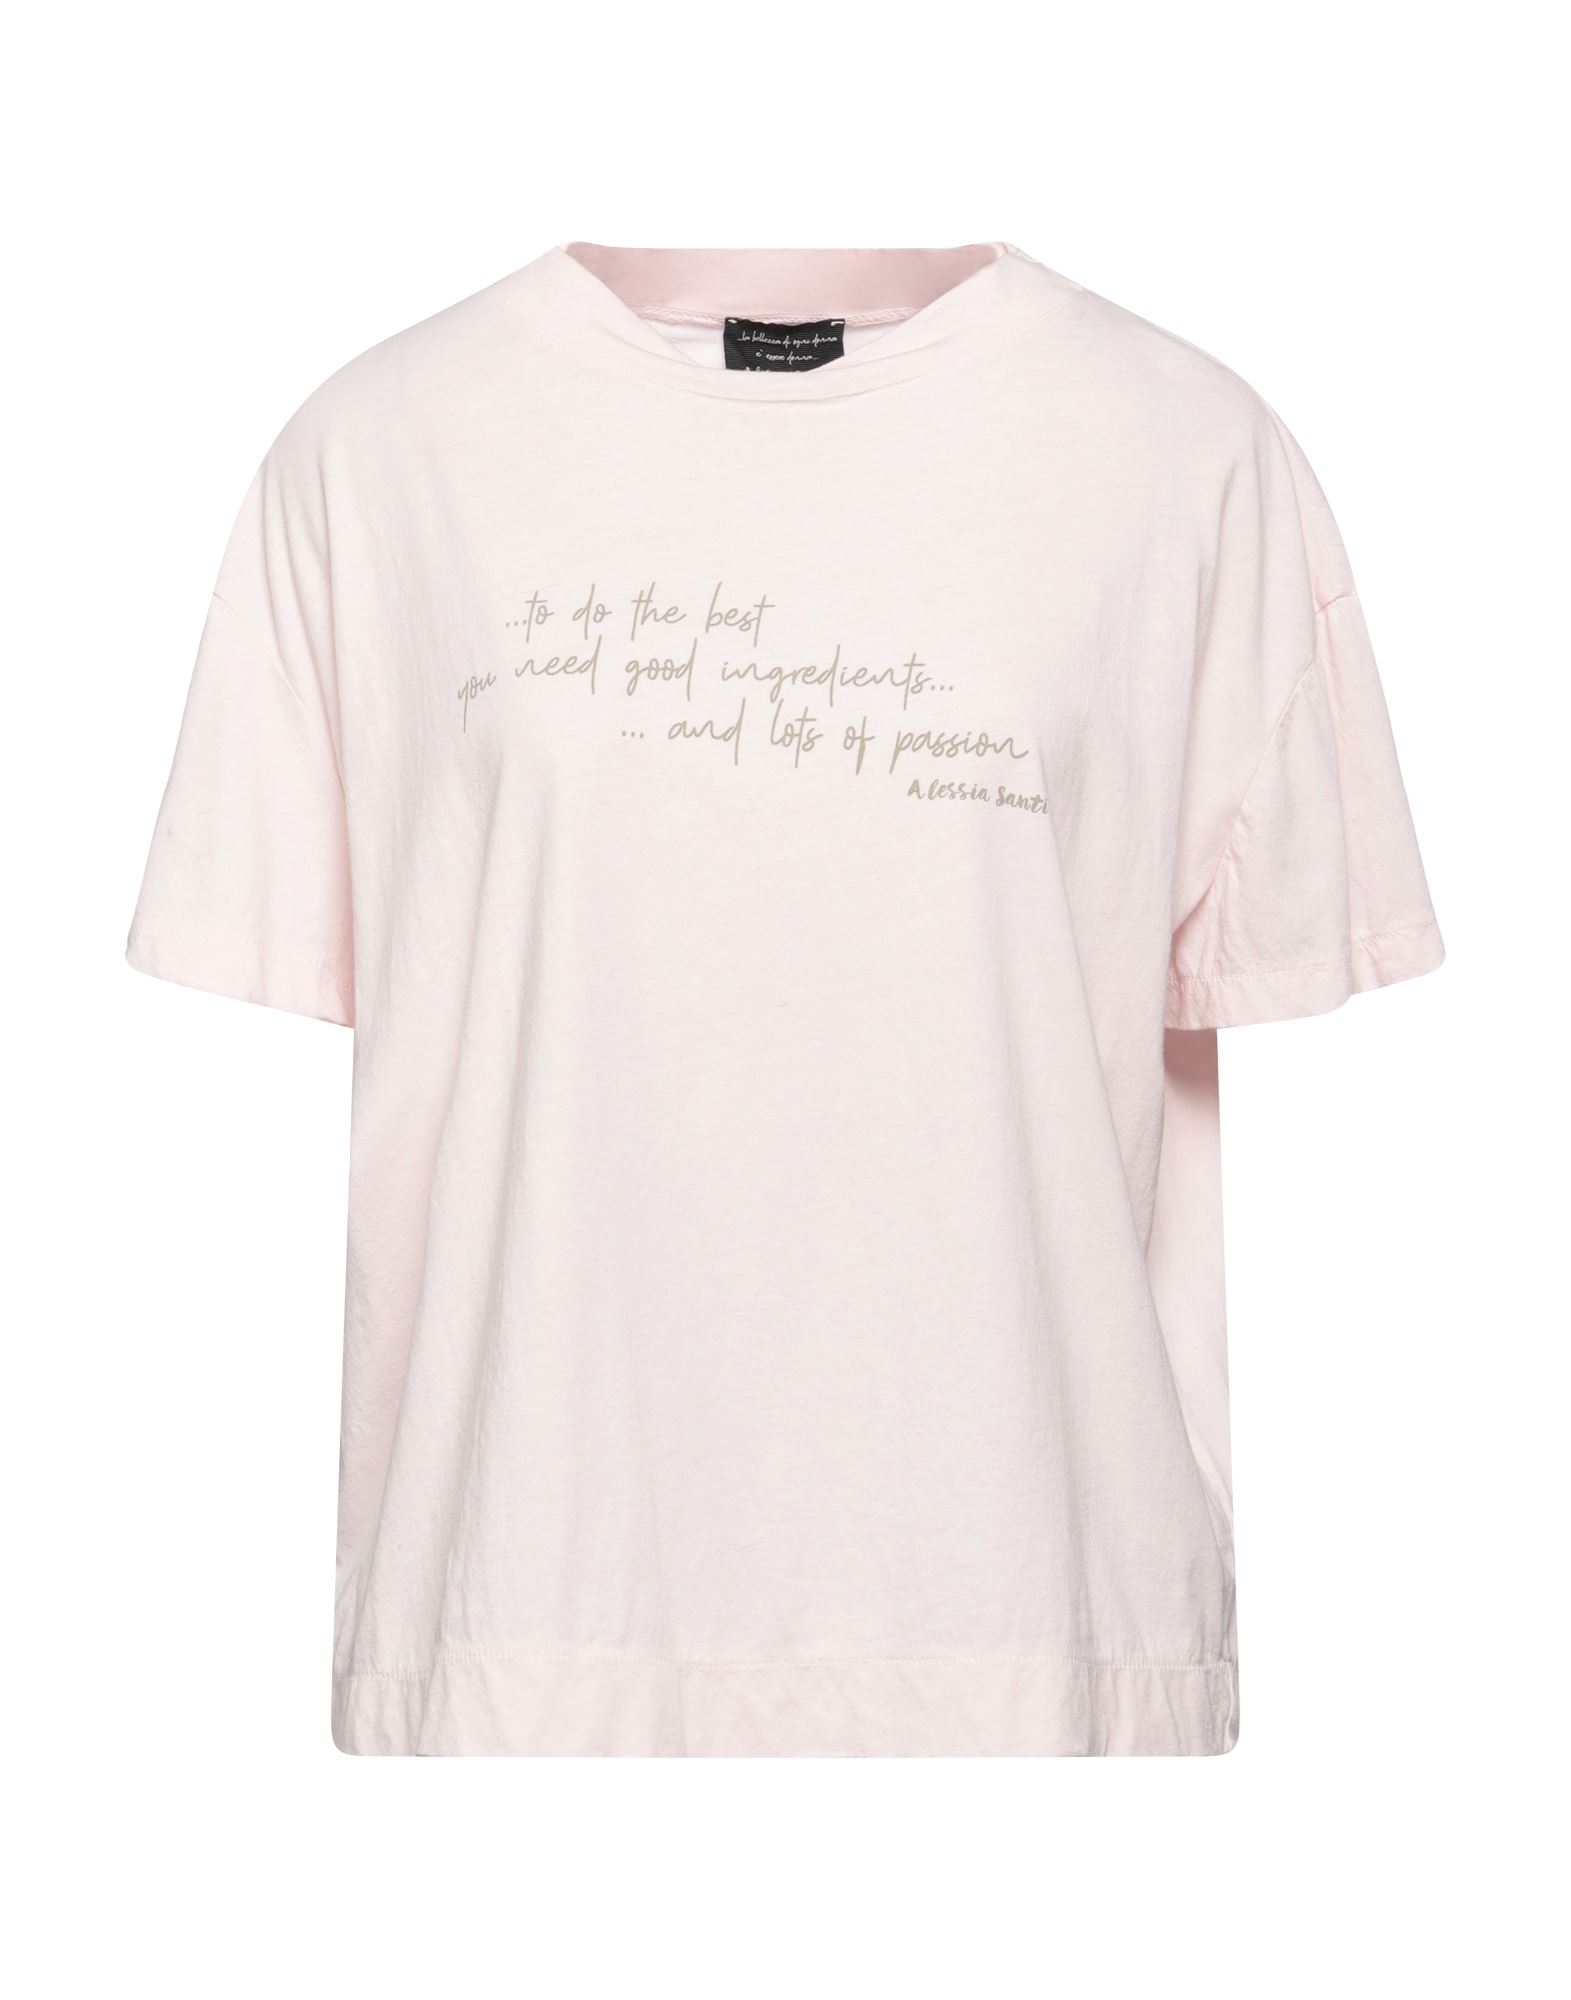 Alessia Santi T-shirts In Light Pink